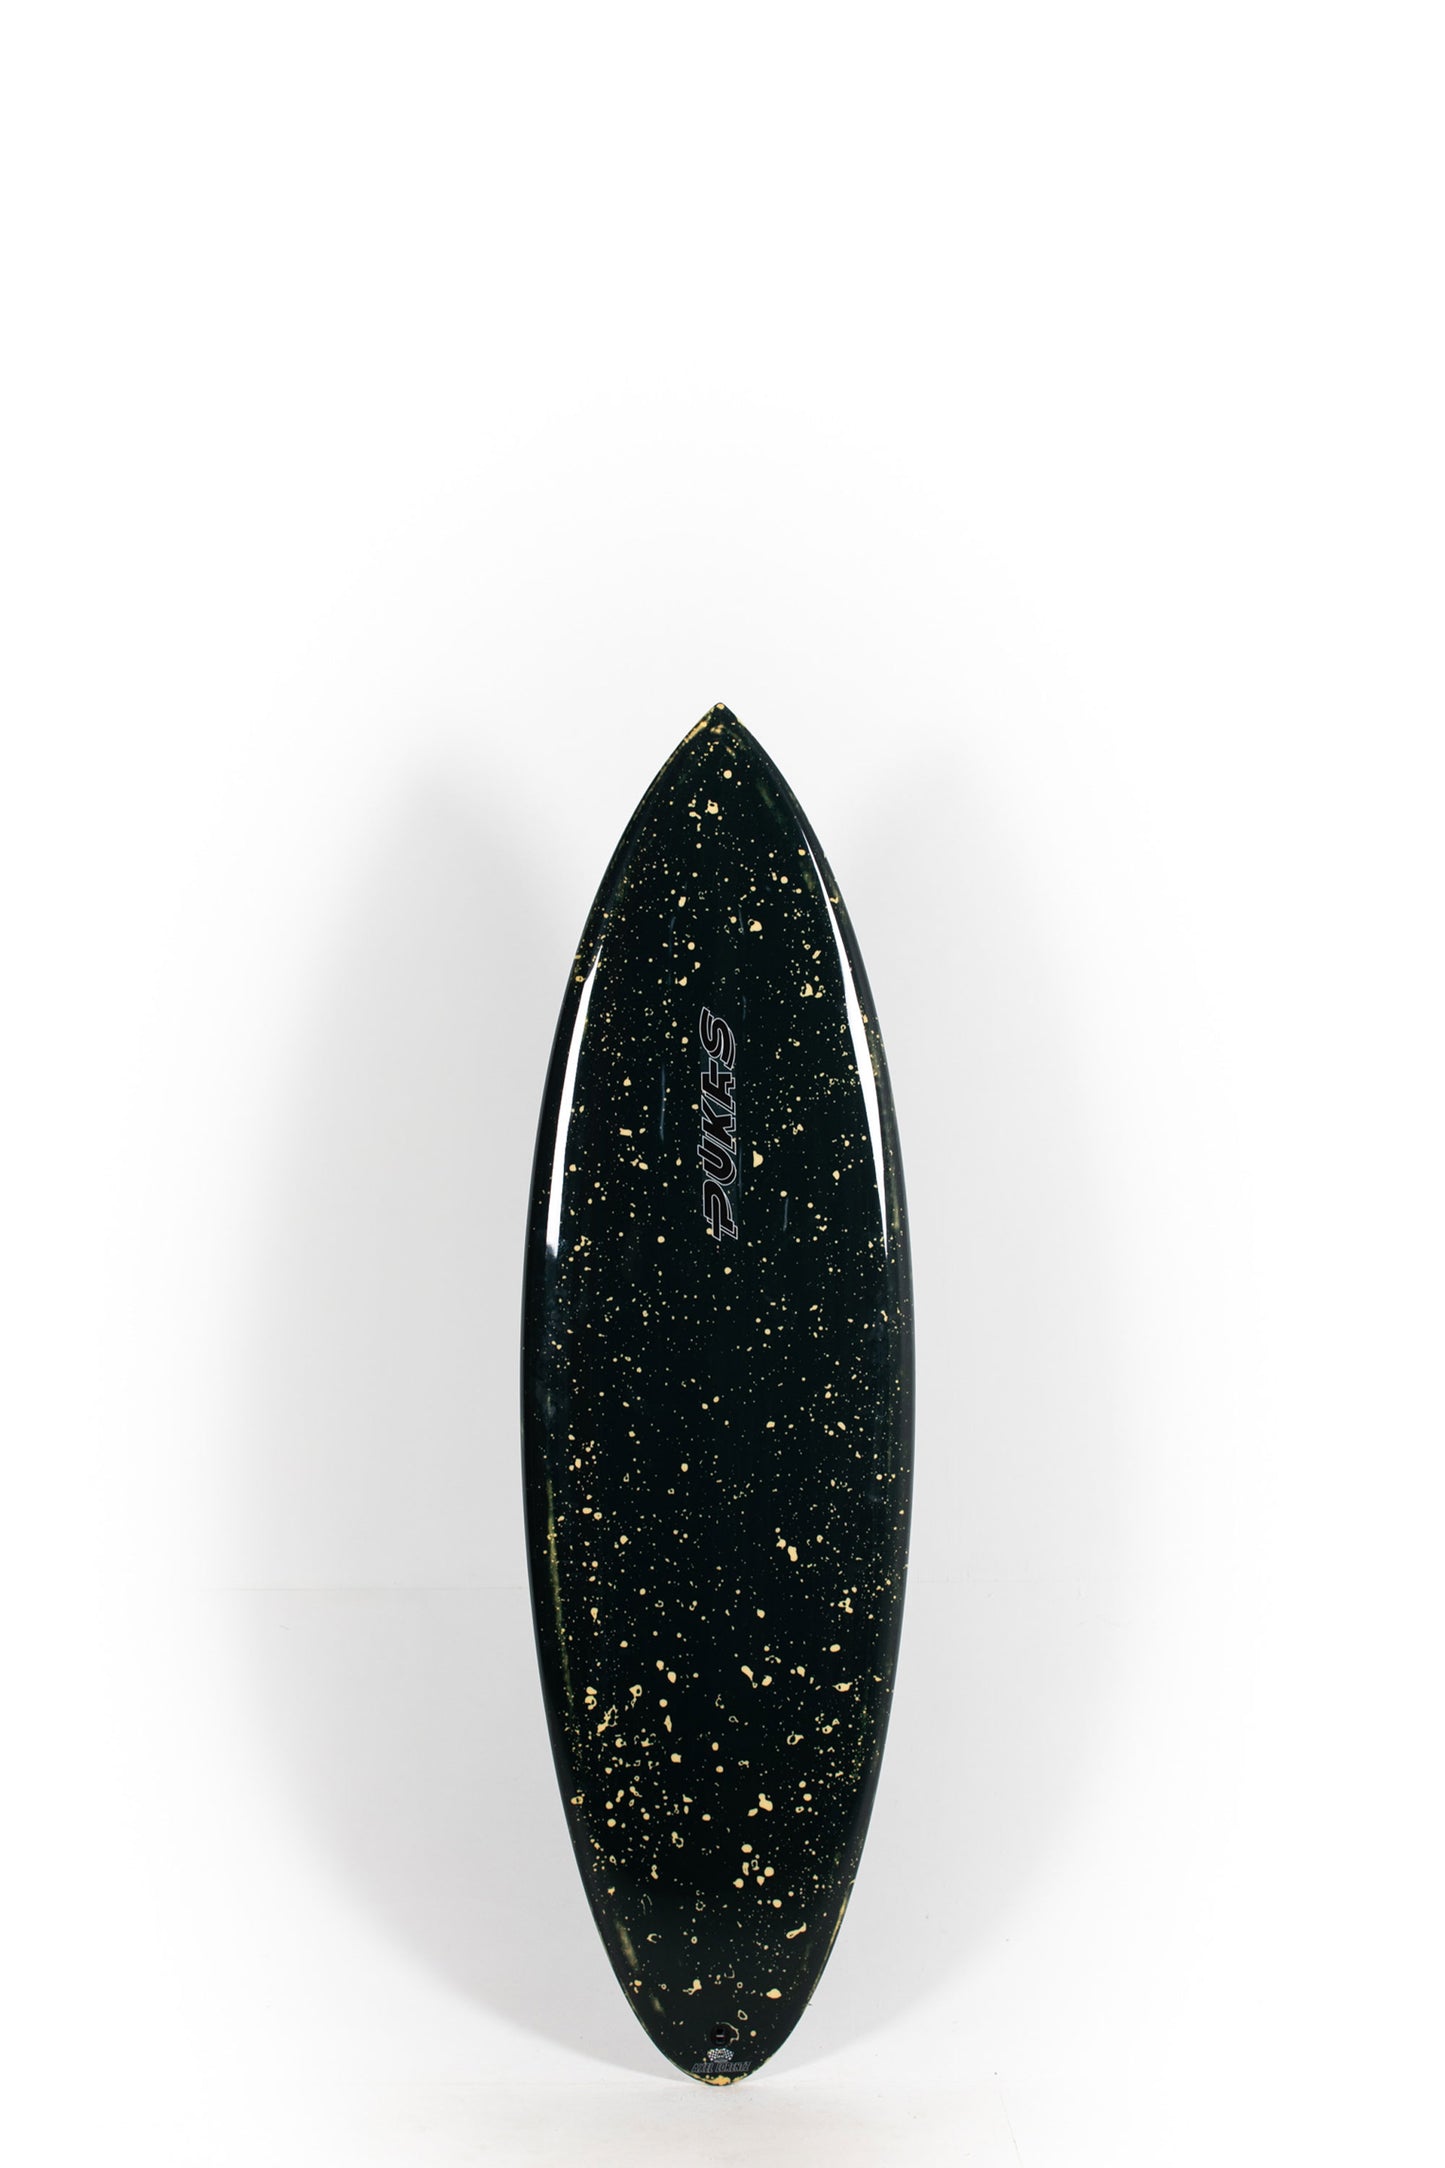 Pukas Surf Shop - Pukas Surfboard - 69ER PRO by Axel Lorentz - 5’10” x 20,25 x 2,5 - 31,71L - AX08903